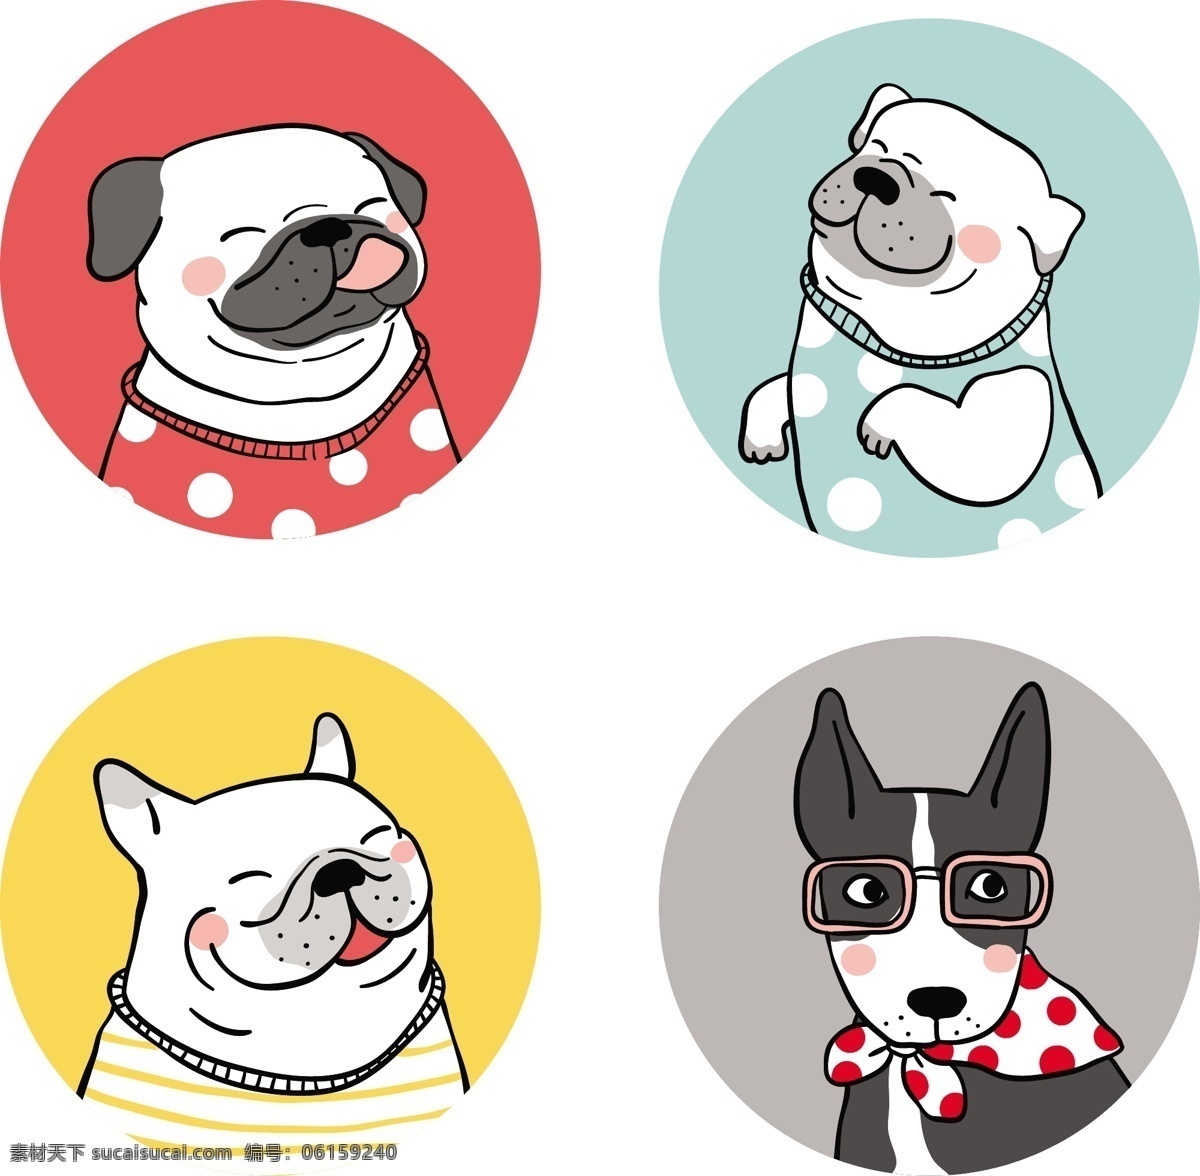 可爱 动物 小狗 头像 宠物 头部 创意 卡通 装饰图案 宠物表情 矢量设计 简约简笔 绘画 动漫动画